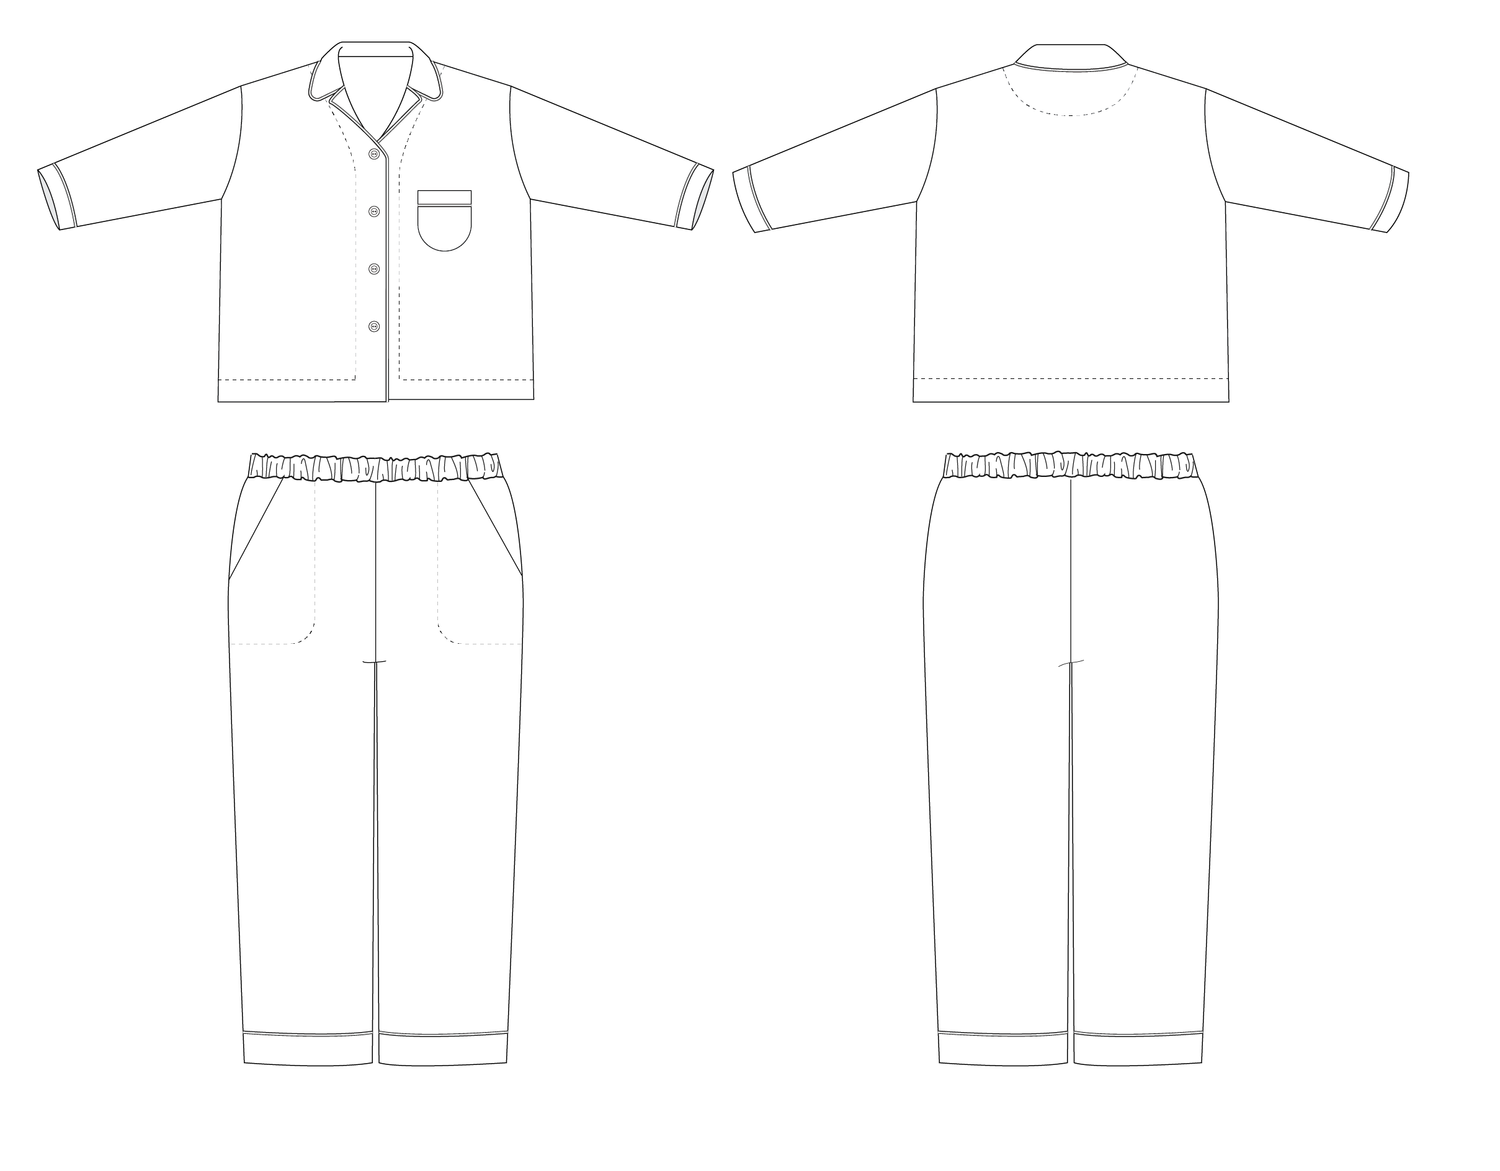 Spinifex pjs sewing pattern pdf â muna and broad